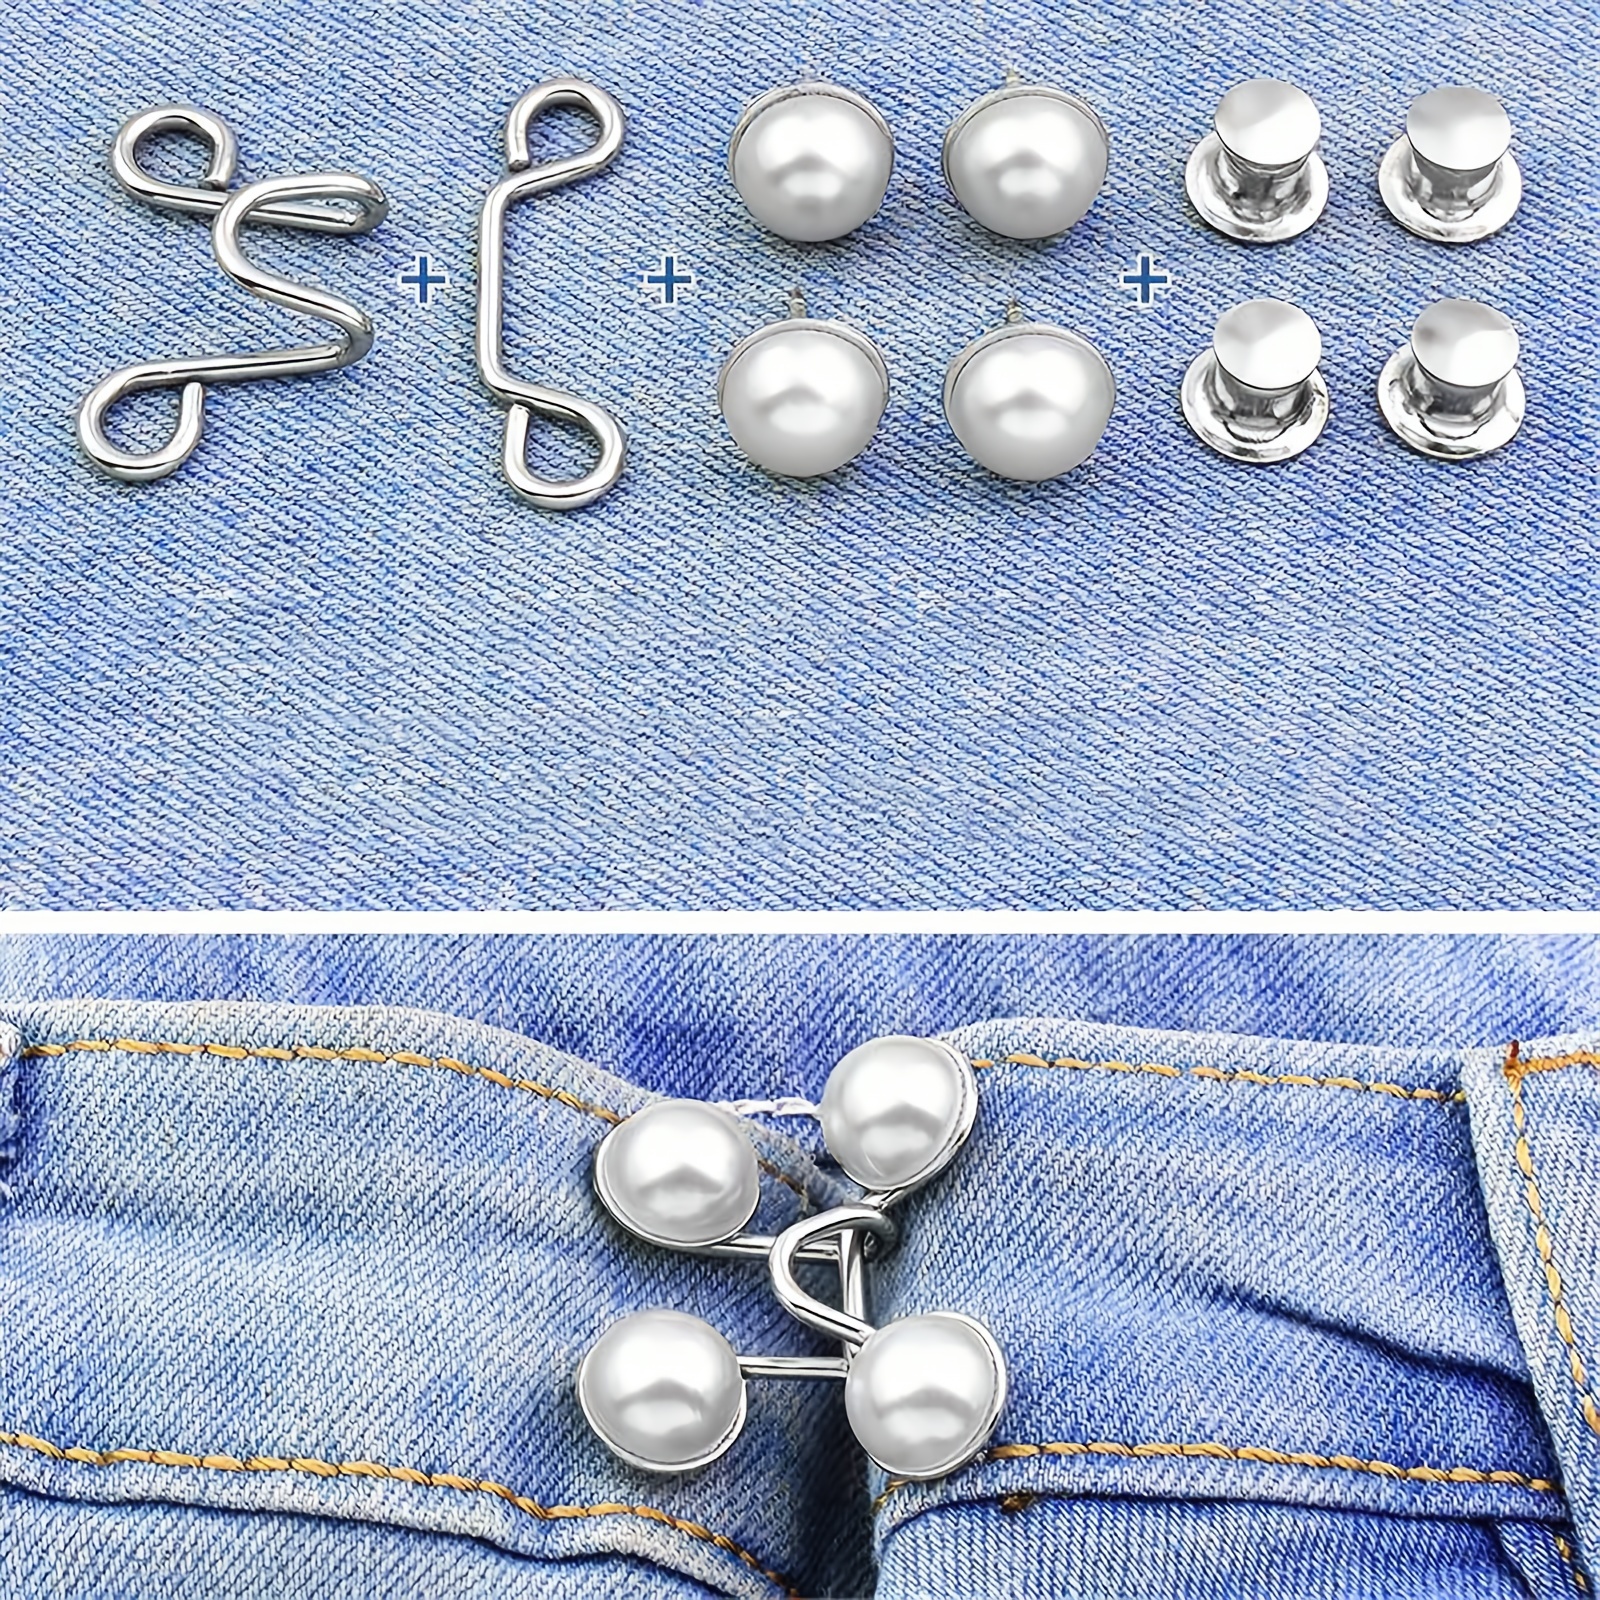 ShenMo Lot de 12 boutons pour jeans, épingles à boutons réglables,  resserrez la taille du pantalon, sans ture et sans outils, épingles  instantanées pour pantalons, installation simple, réutilisables 